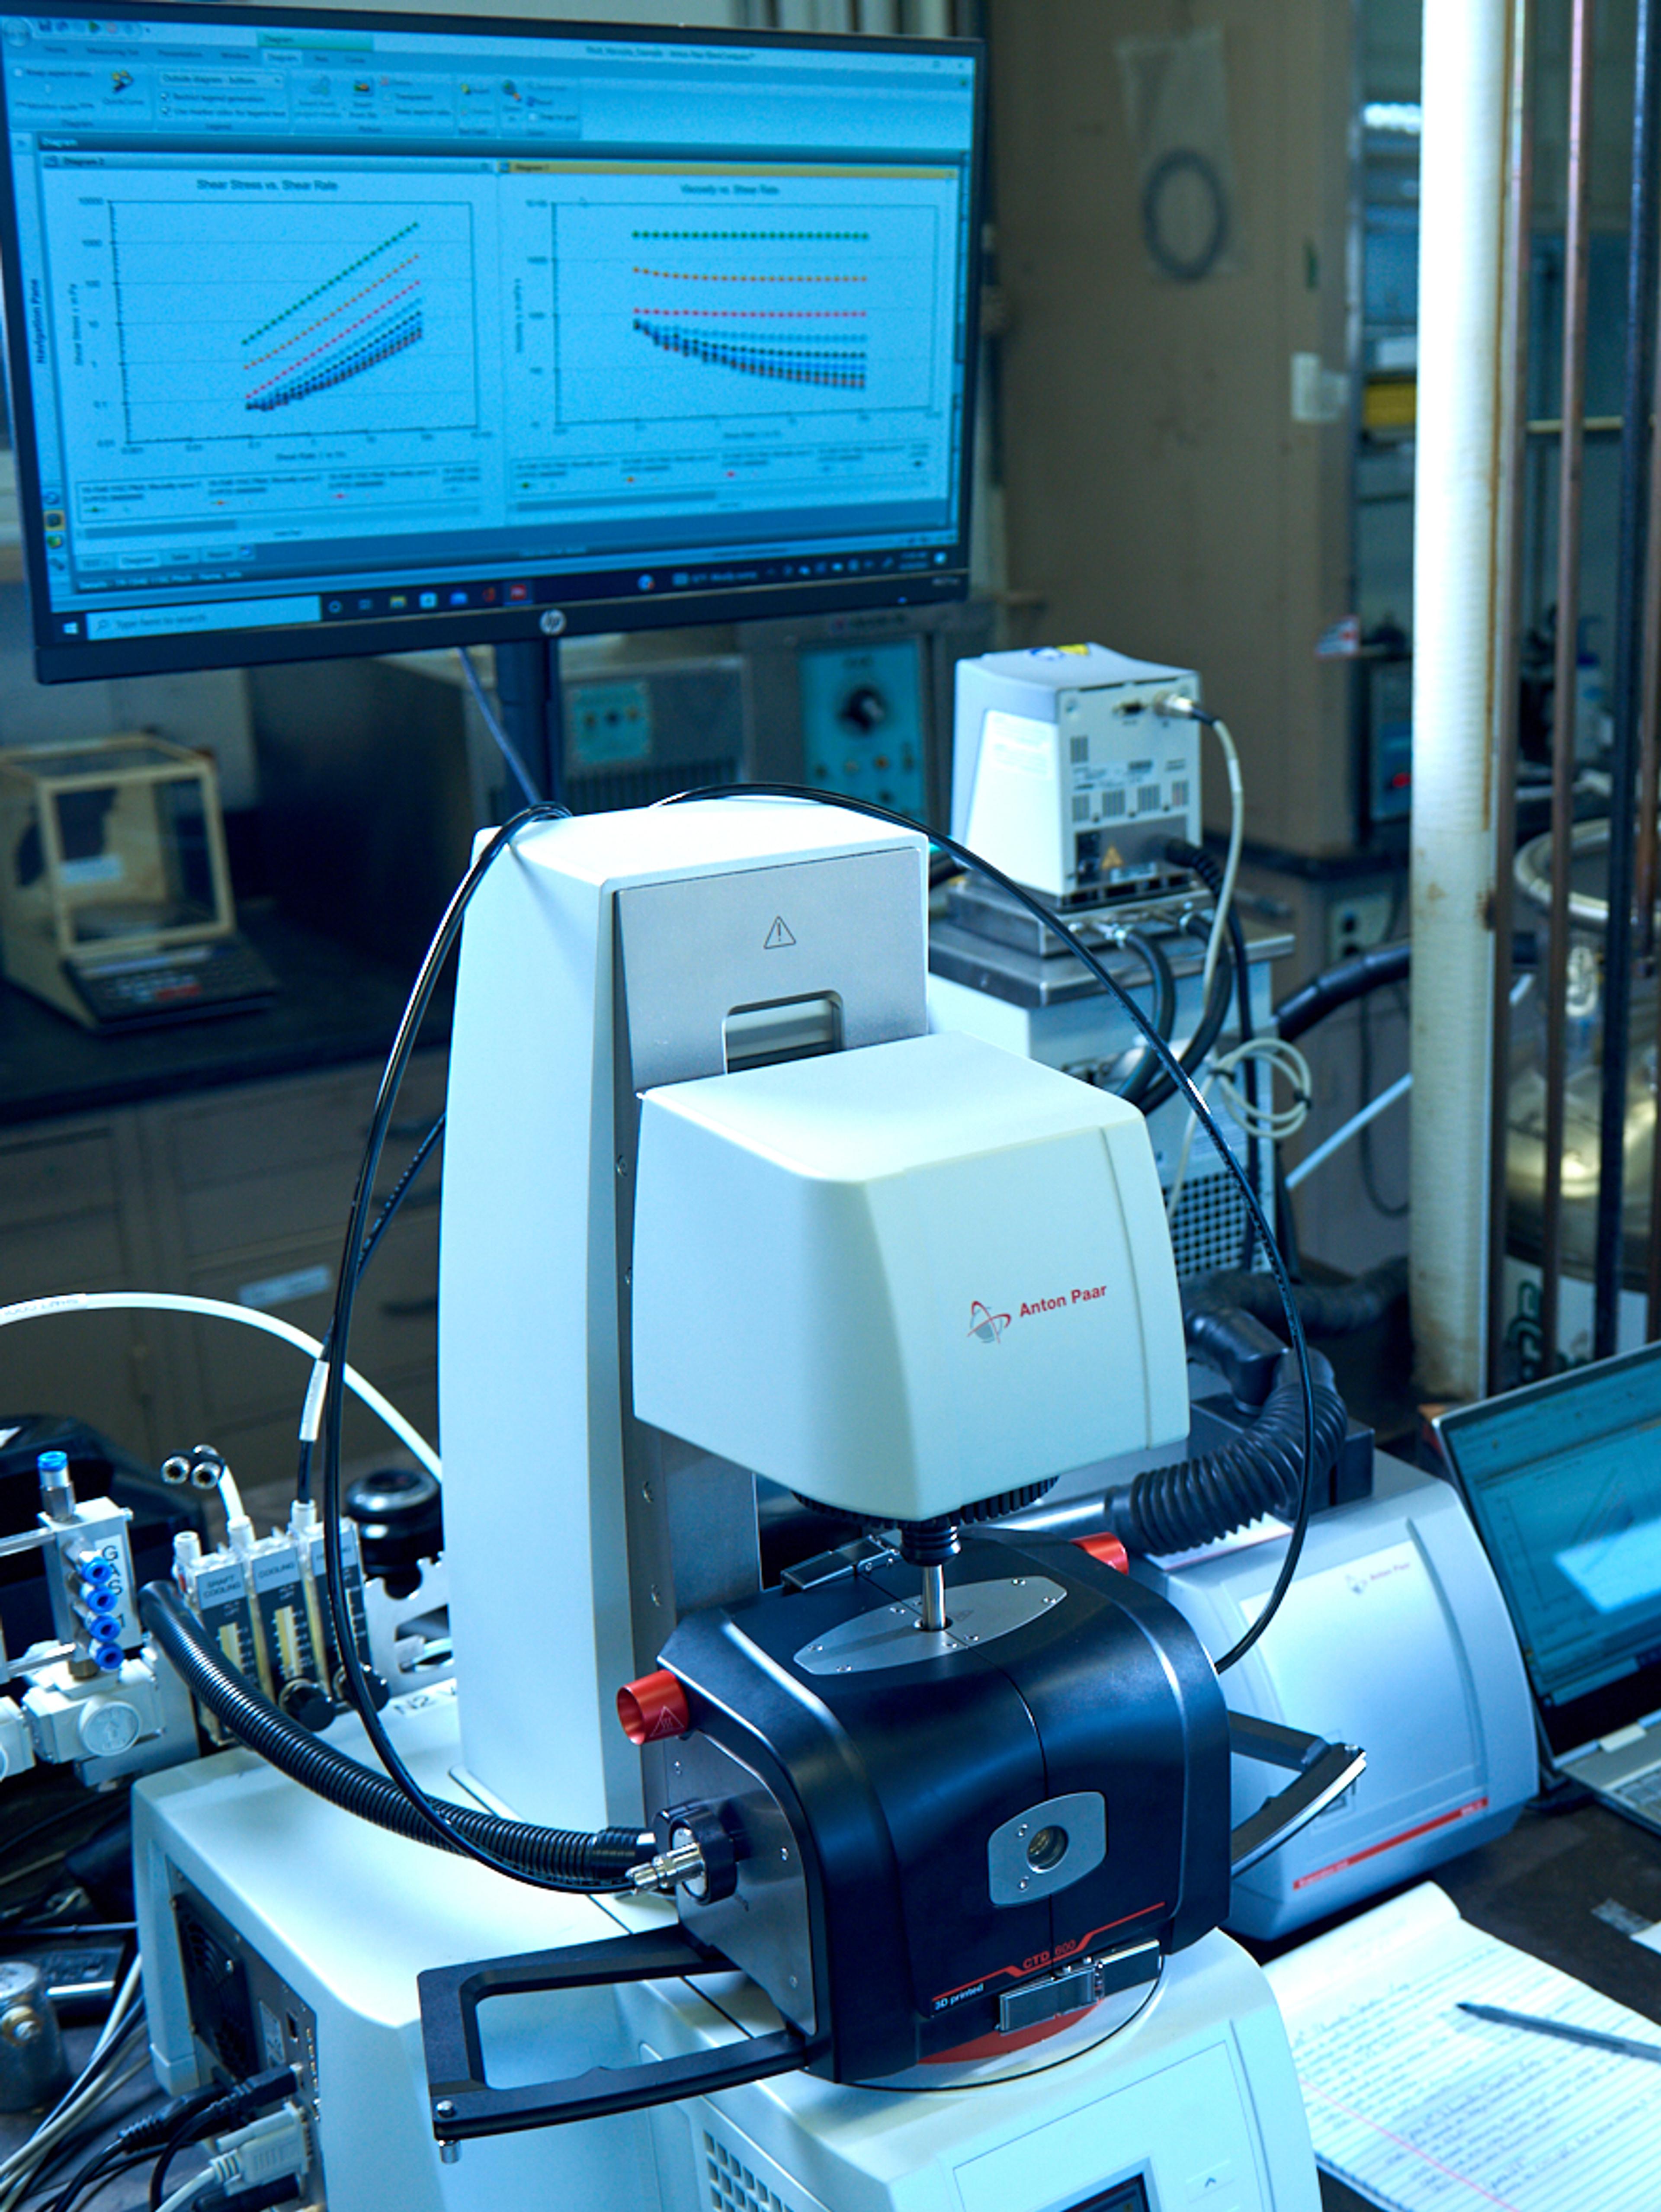 Machine in a lab